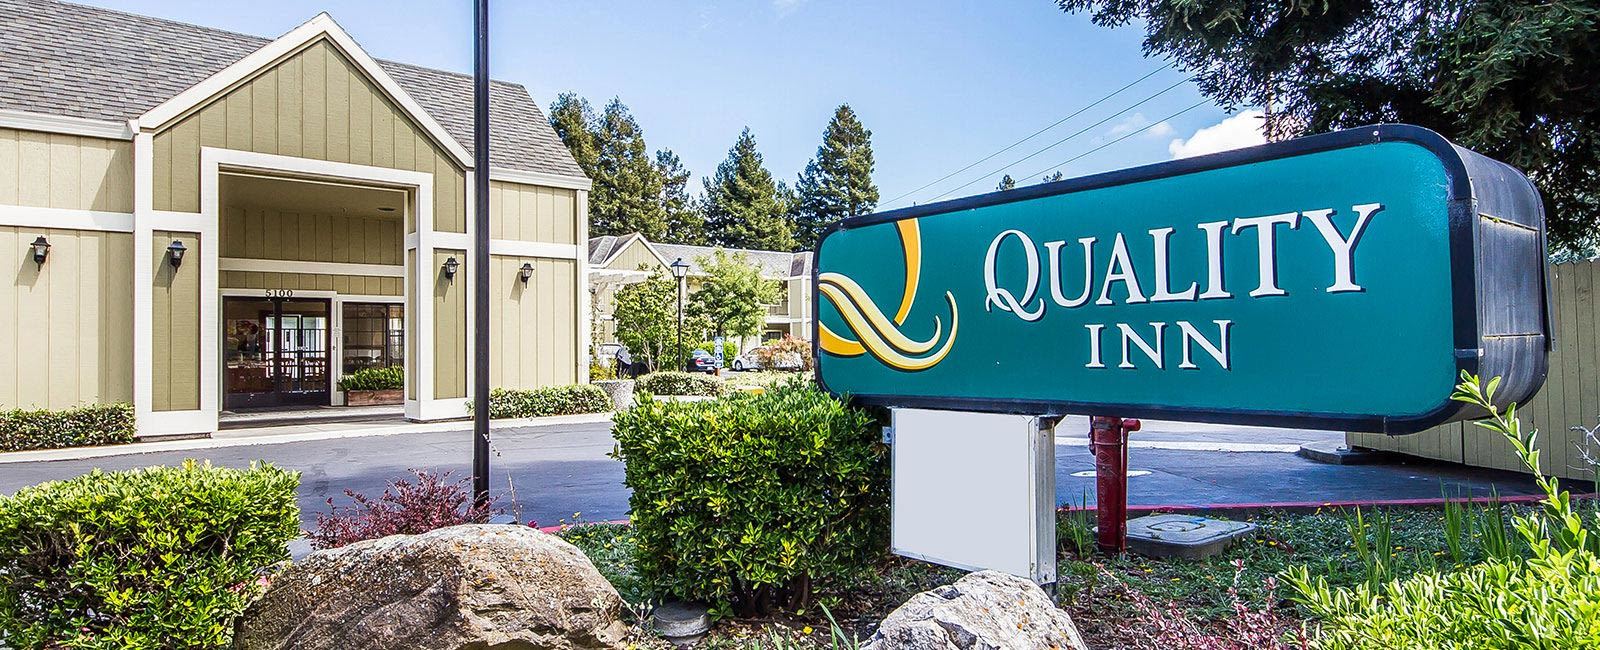 Photo of Quality Inn Petaluma, Petaluma, CA